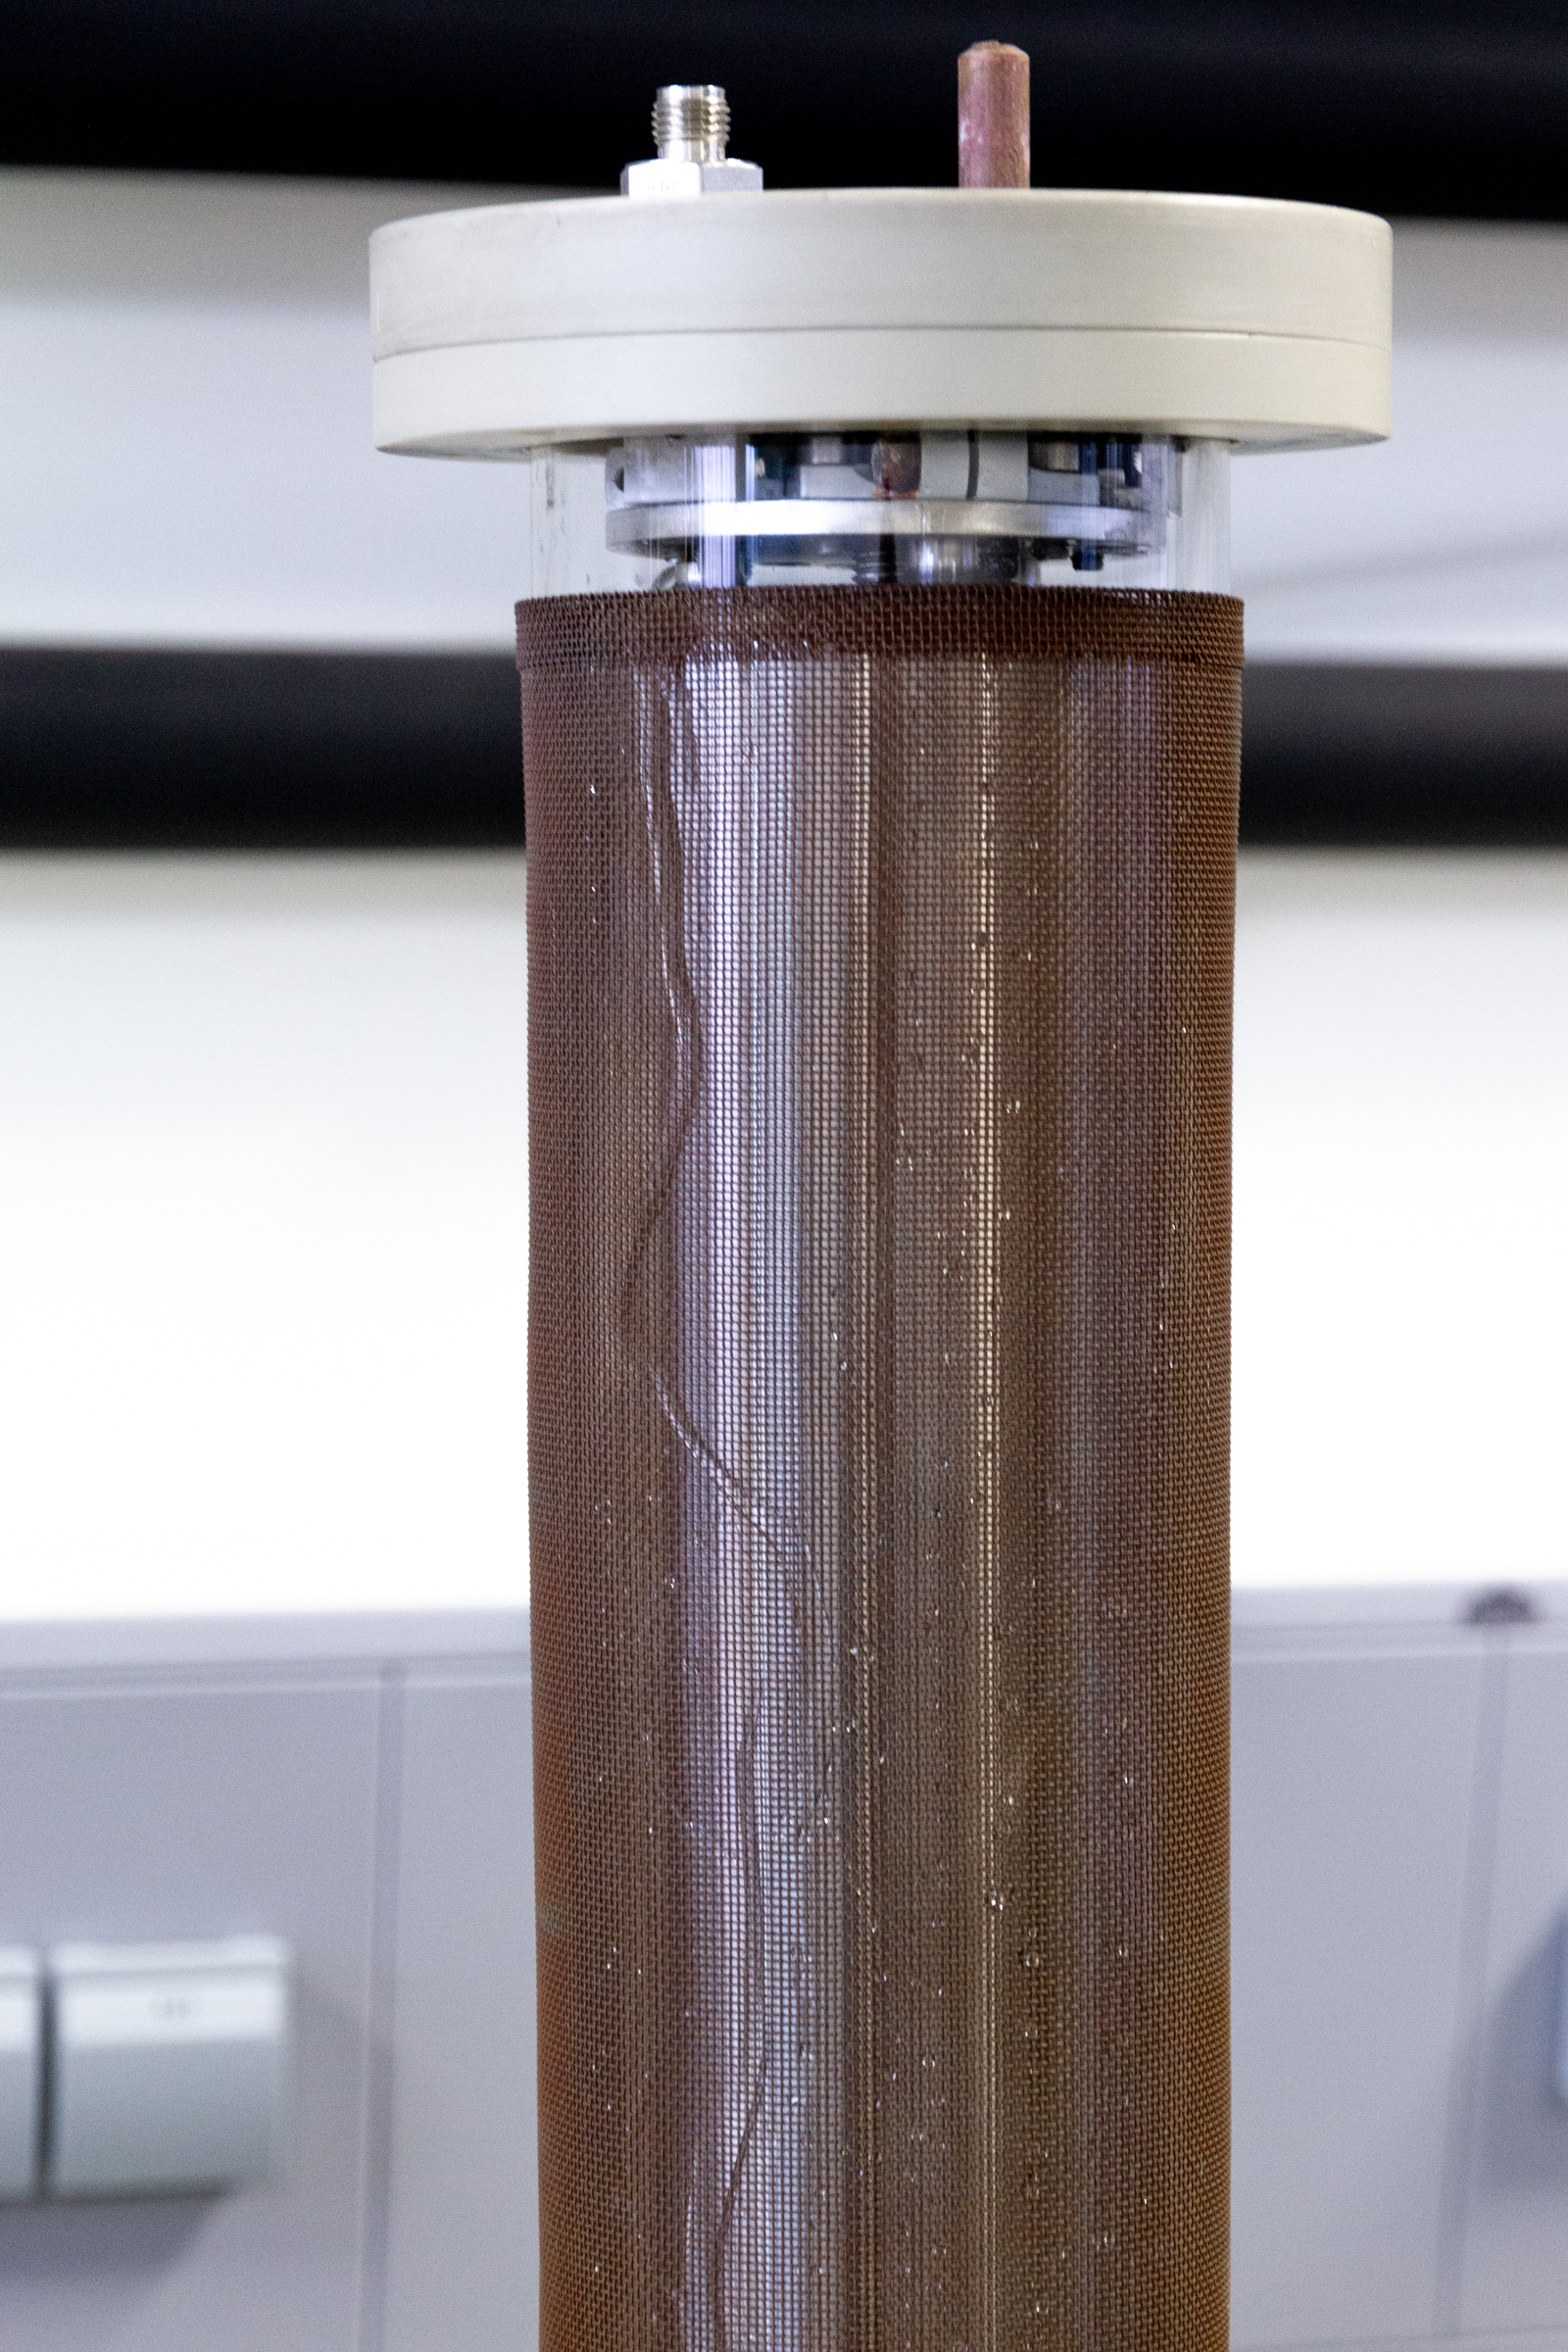 Detaildarstellung eines koaxialen DBD-Reaktors mit Wasserfilm. 